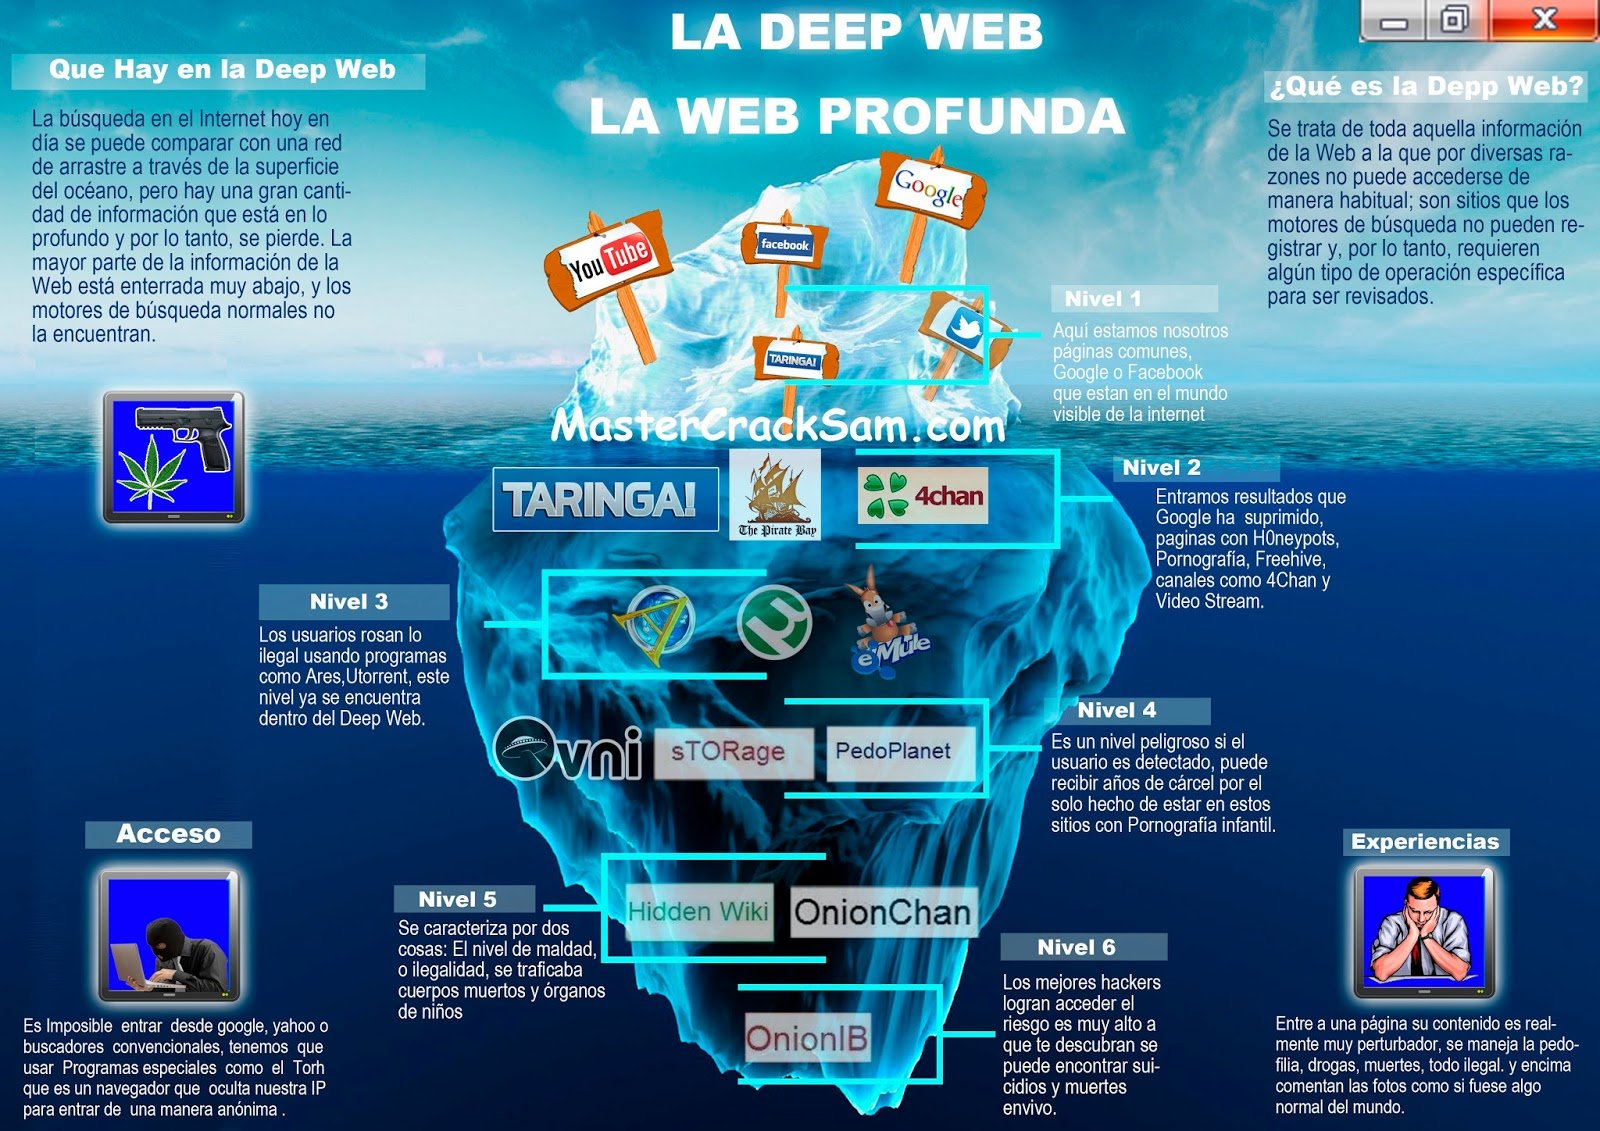 Deep Net Links